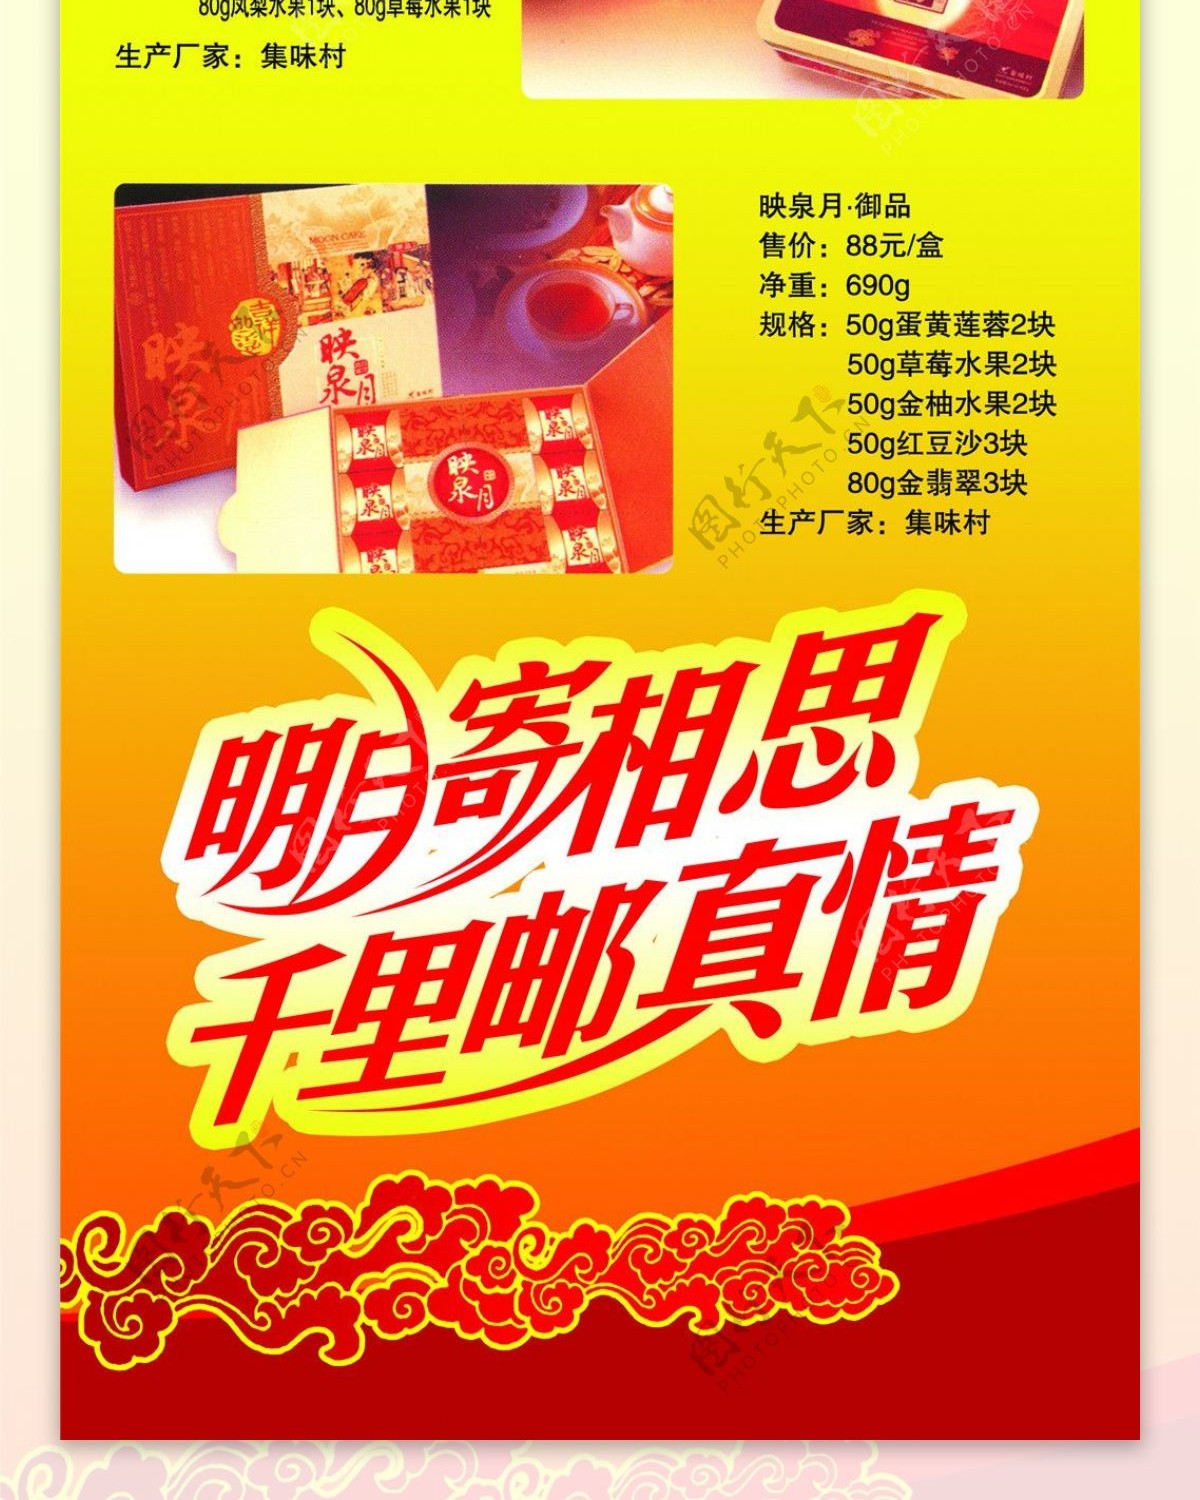 中国邮政展板设计